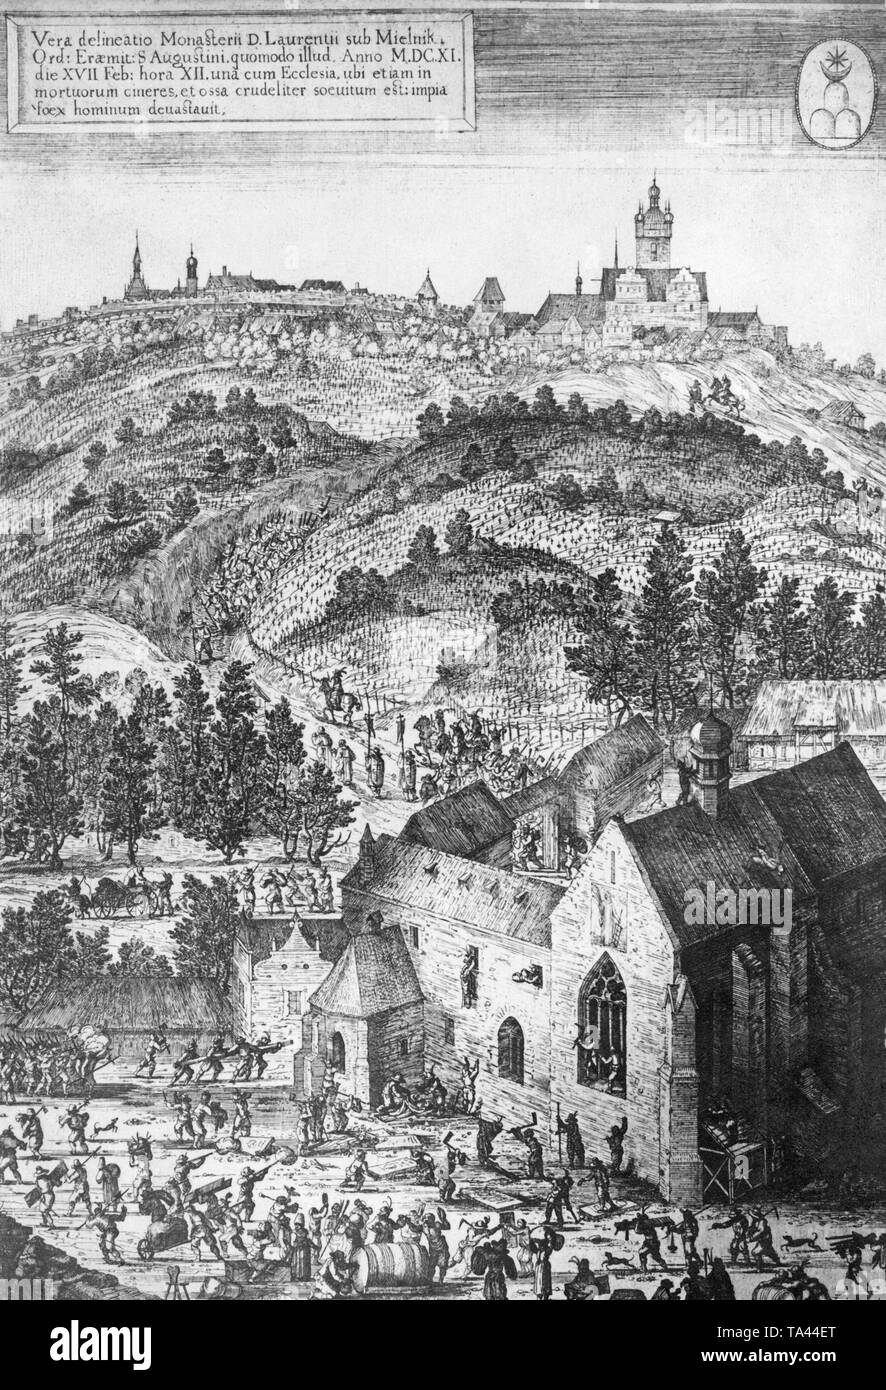 En raison d'une description de l'image, c'est une vraie représentation de la monastère Laurencius à Melnik, tel qu'il est détruit avec l'église et les tombes des foules contre nature le 17 février 1611. Banque D'Images